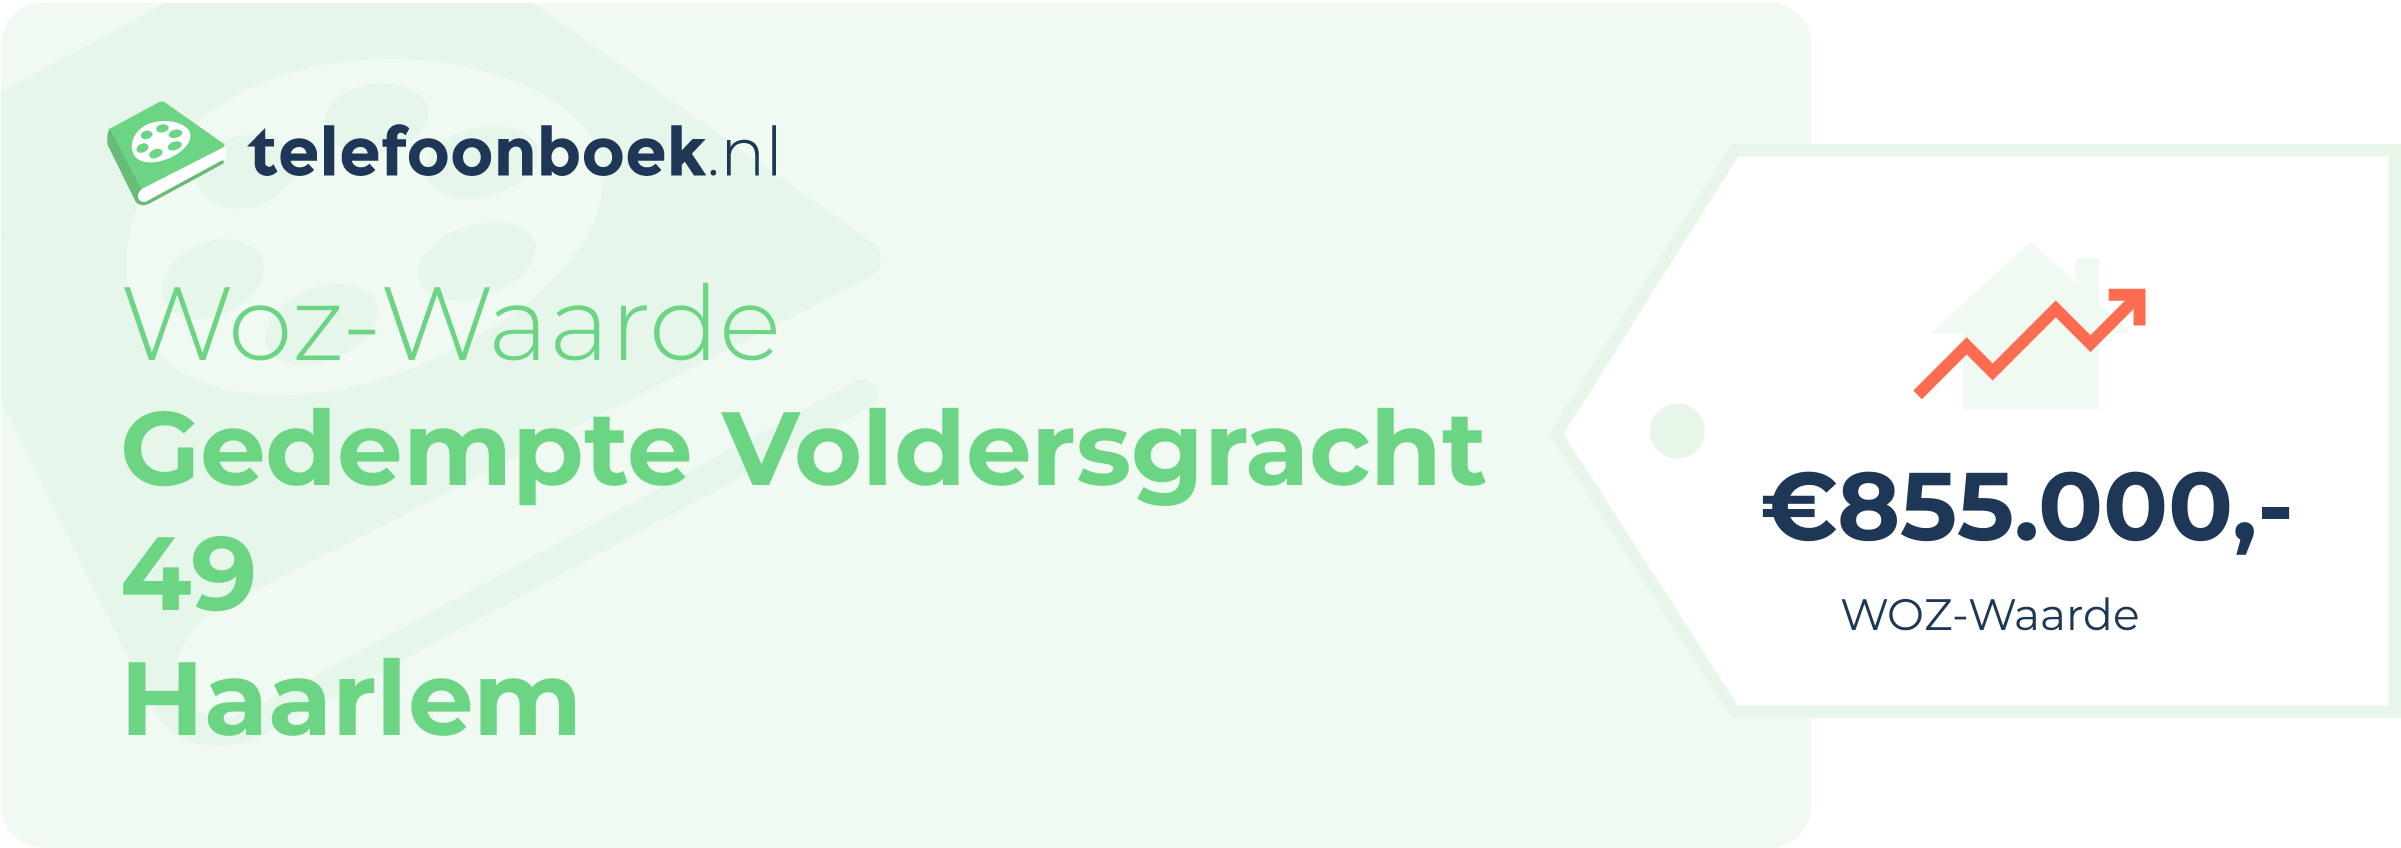 WOZ-waarde Gedempte Voldersgracht 49 Haarlem